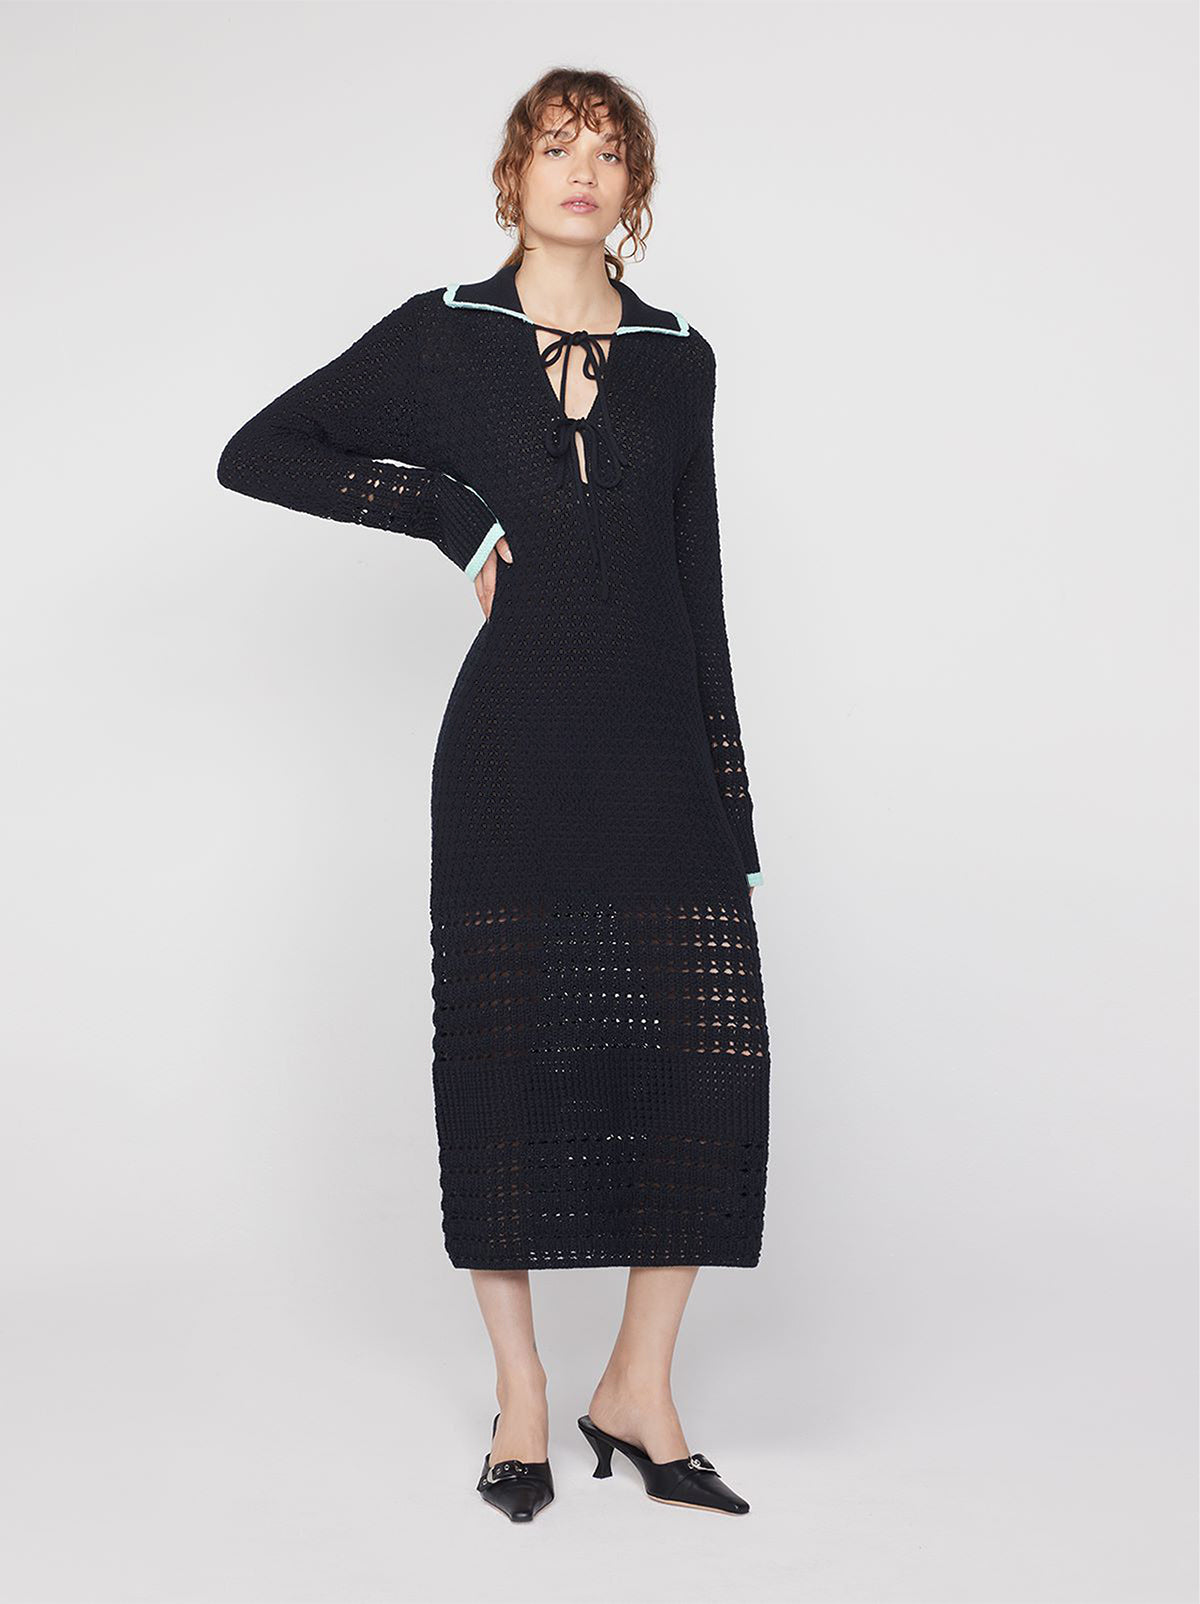 Delilah Black Crochet Knit Dress